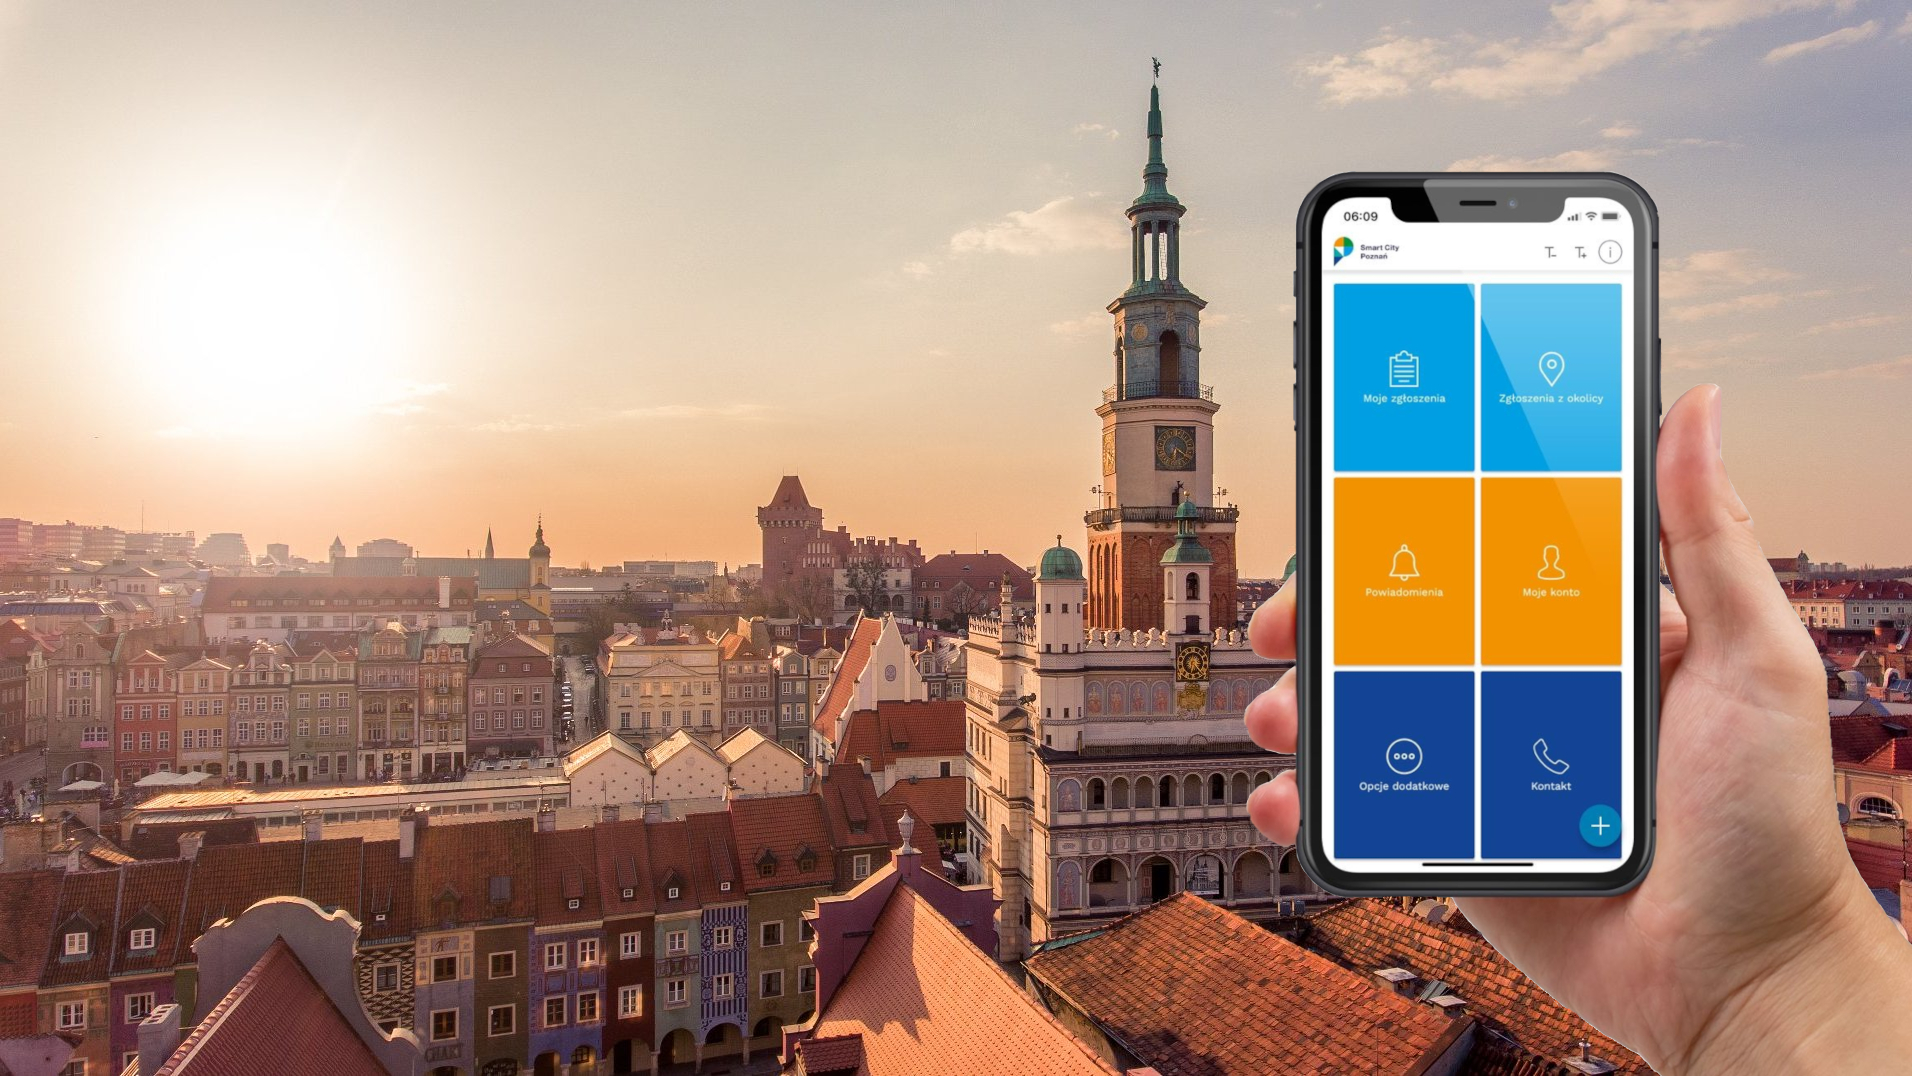 Zdjęcie przedstawia dłoń trzymającą smartfon z działającą aplikacją Poznań Smart City. Aplikacja wyświetla widok menu głównego. W tle widoczny jest Stary Rynek wraz z otaczającymi go kamienicami. Sceneria utrzymana jest w świetle zachodzącego słońca.